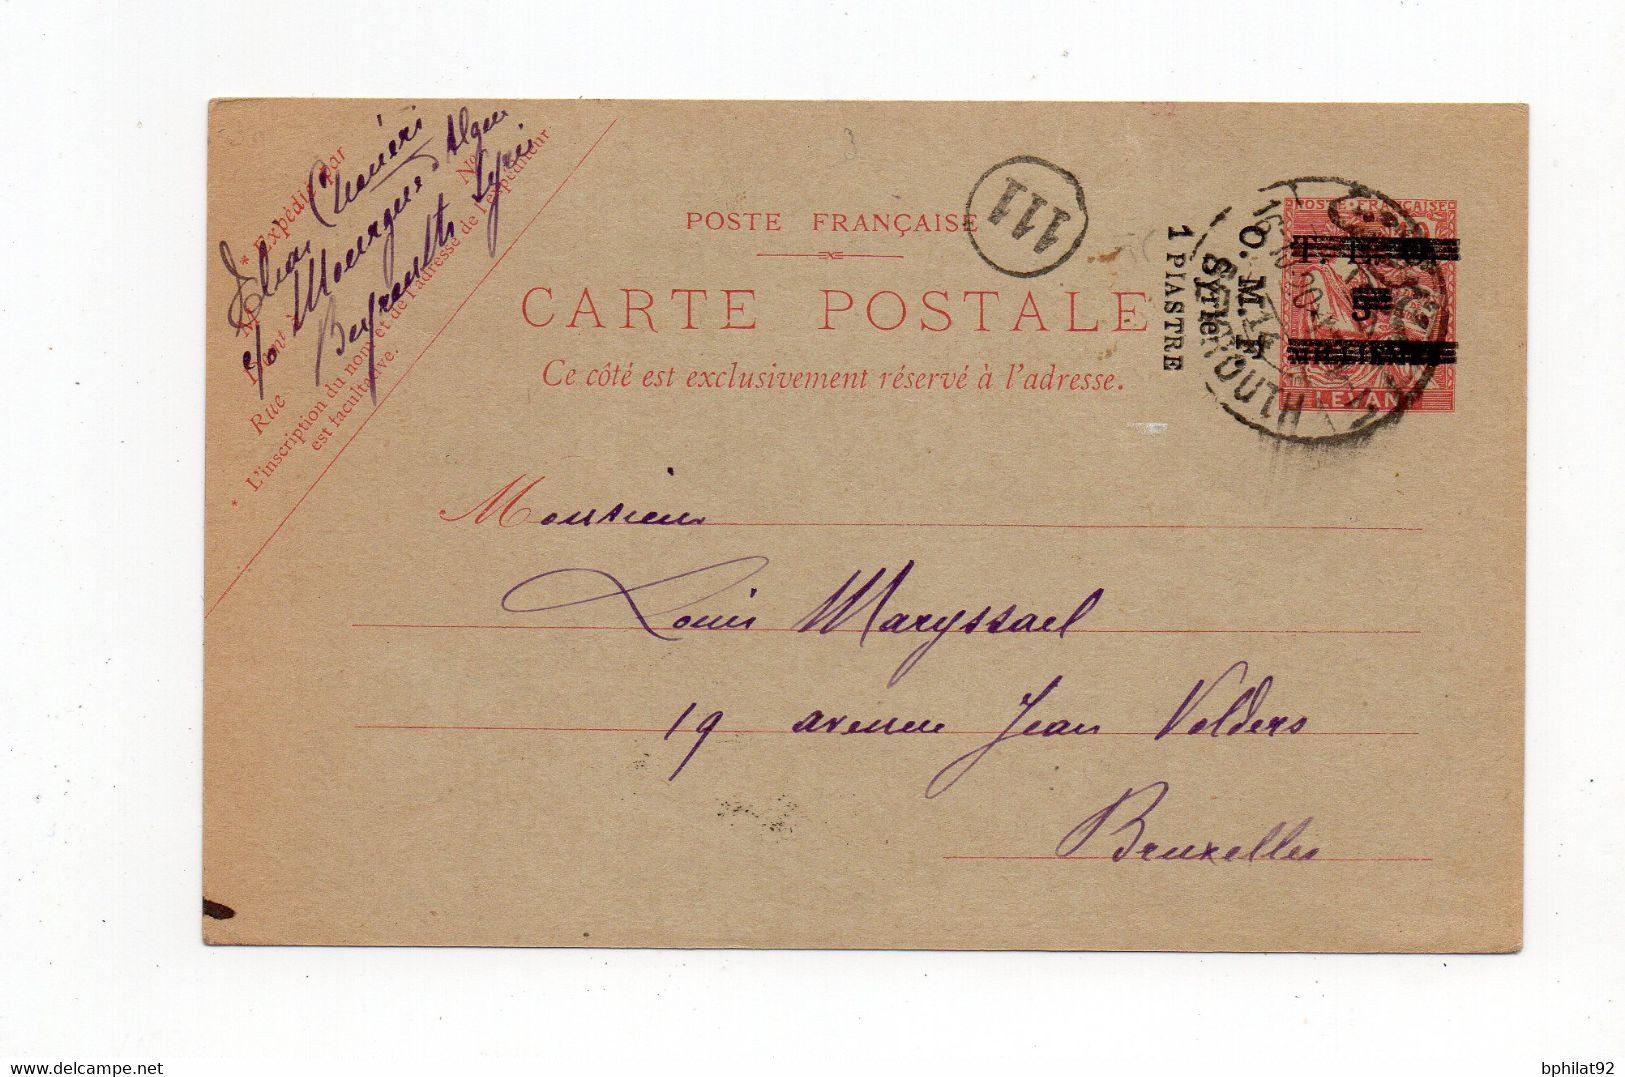 !!! SYRIE, ENTIER POSTAL DE BEYROUTH DE 1920 POUR BRUXELLES - Briefe U. Dokumente